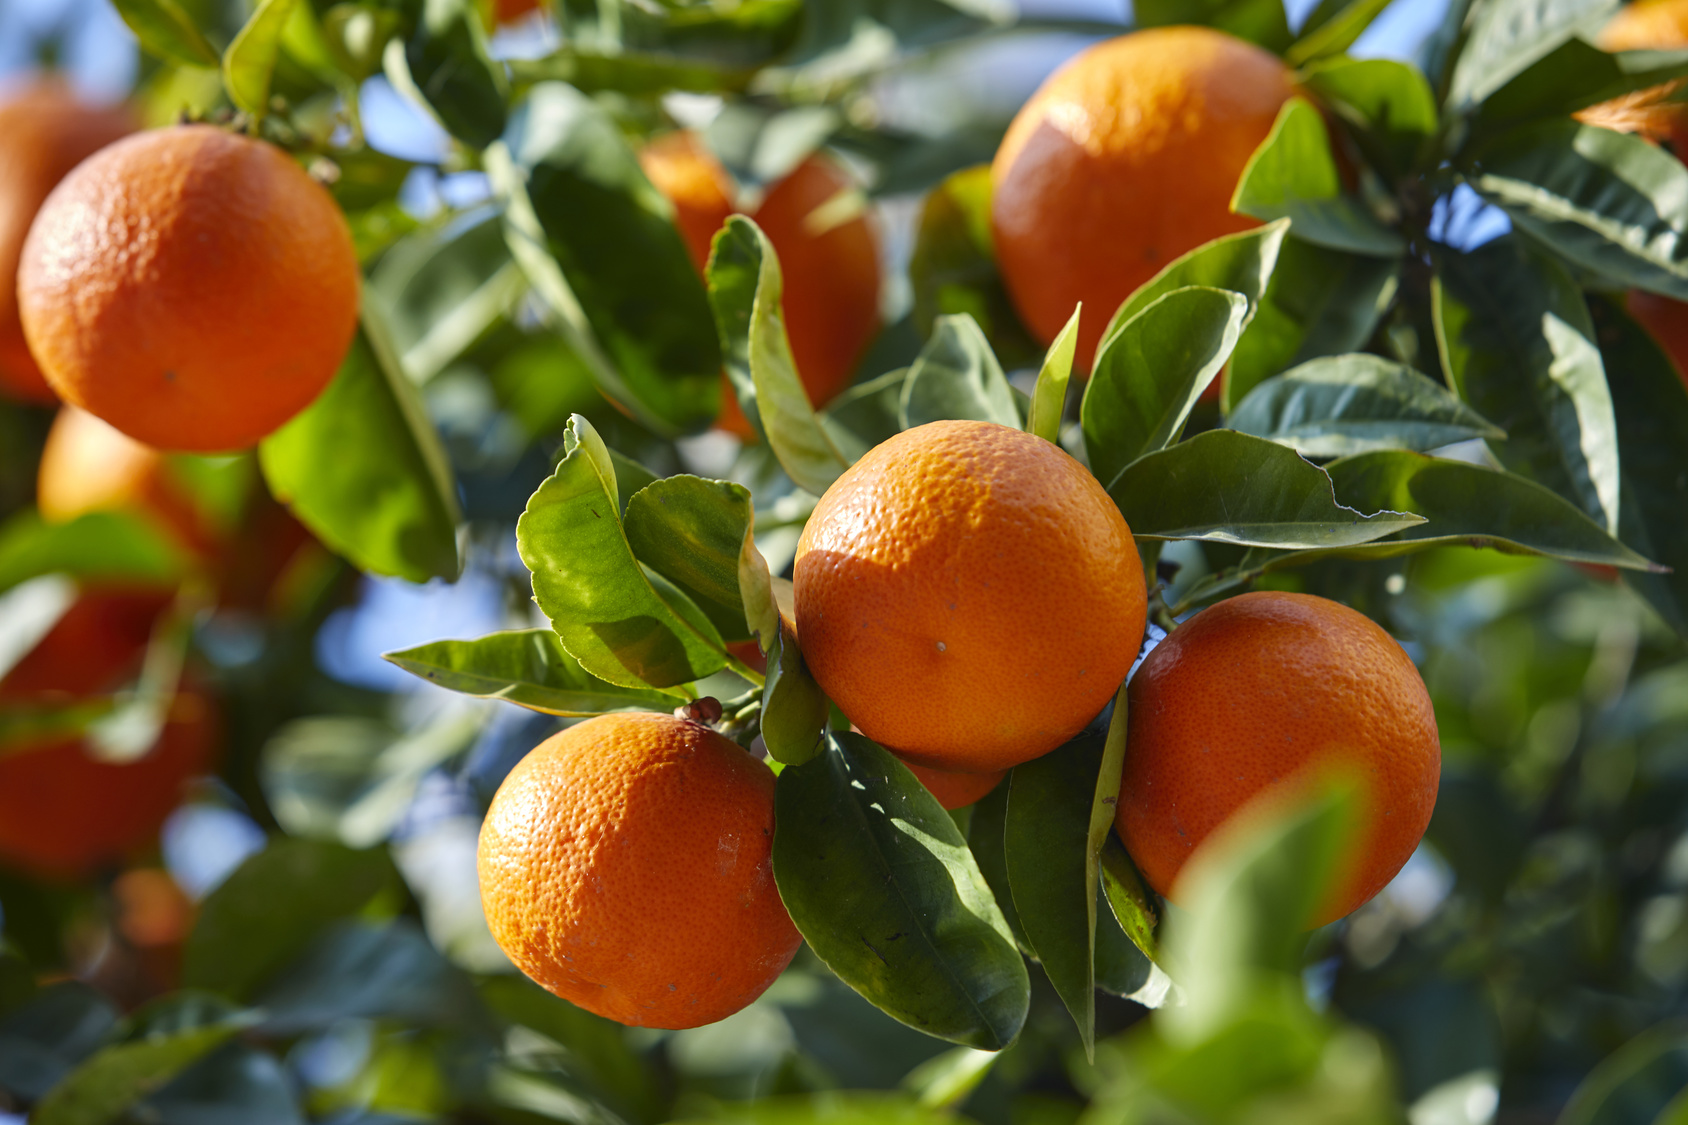 Coltivazione mandarino: l'albero può raggiungere 4 metri d'altezza